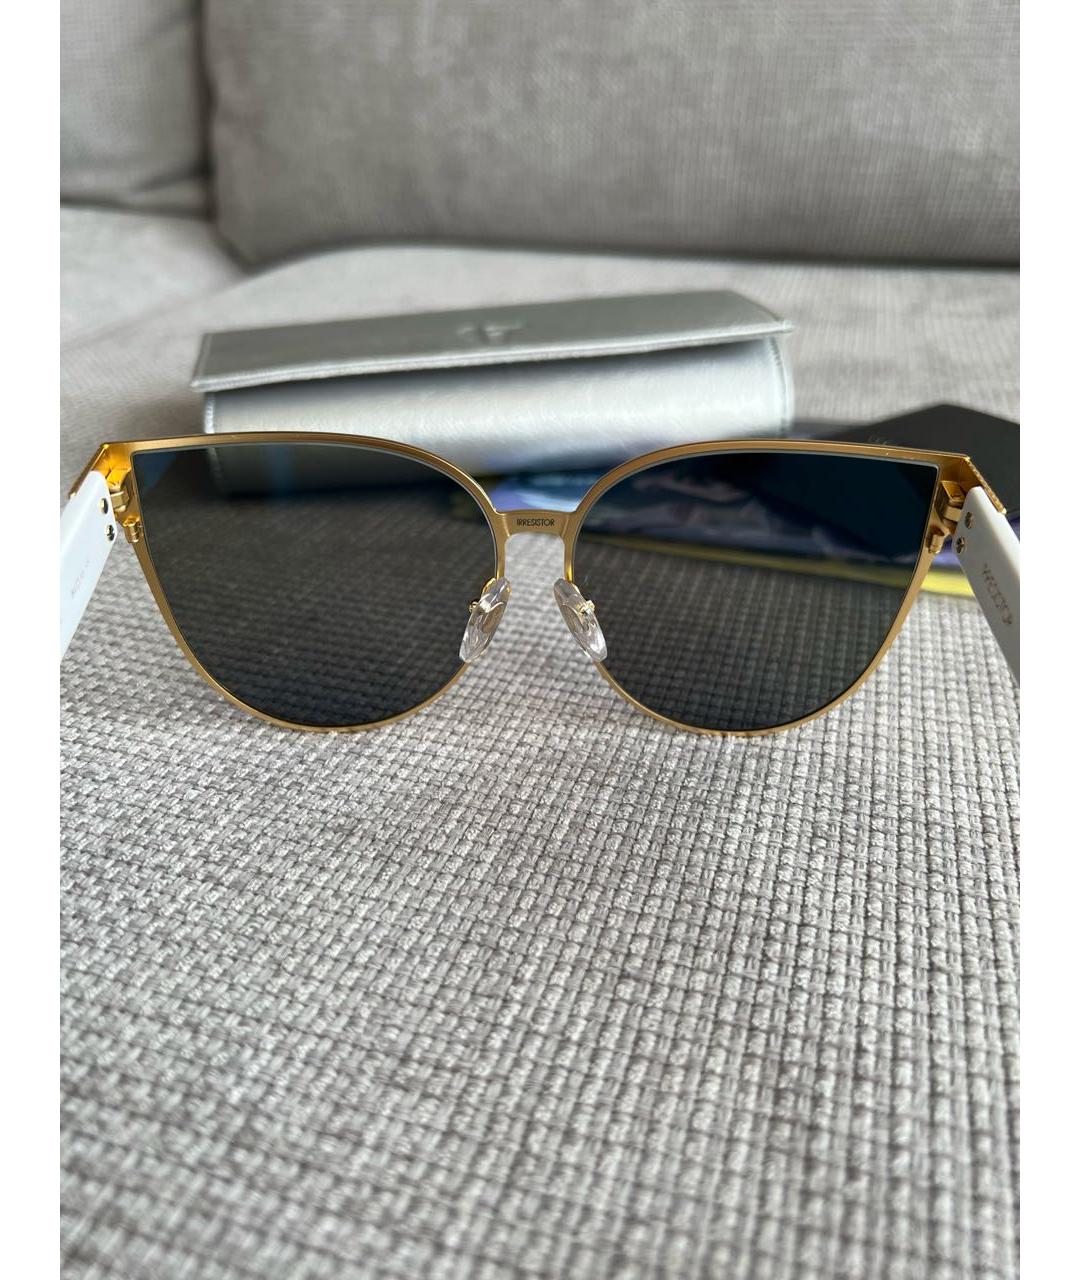 IRRESISTOR Синие металлические солнцезащитные очки, фото 8